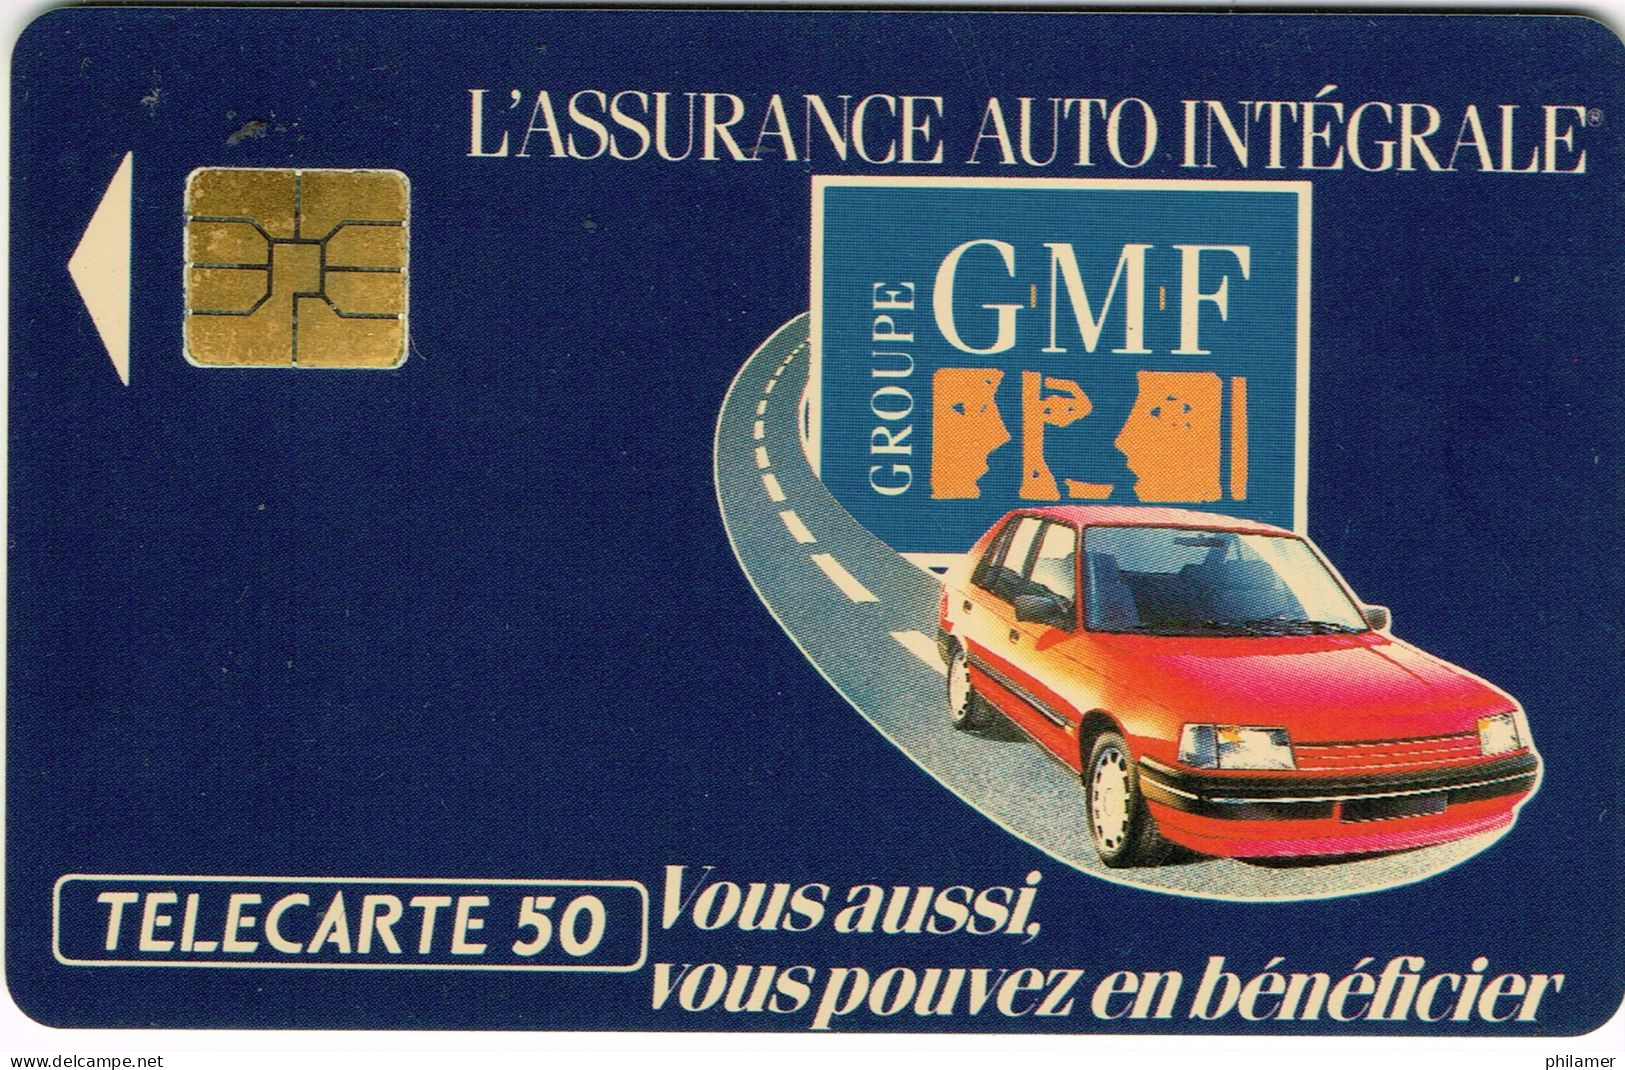 France French Telecarte Phonecard Prive EN203 GMF Assurance Auto Integrale Voiture Auto Car UT BE - Telefoonkaarten Voor Particulieren